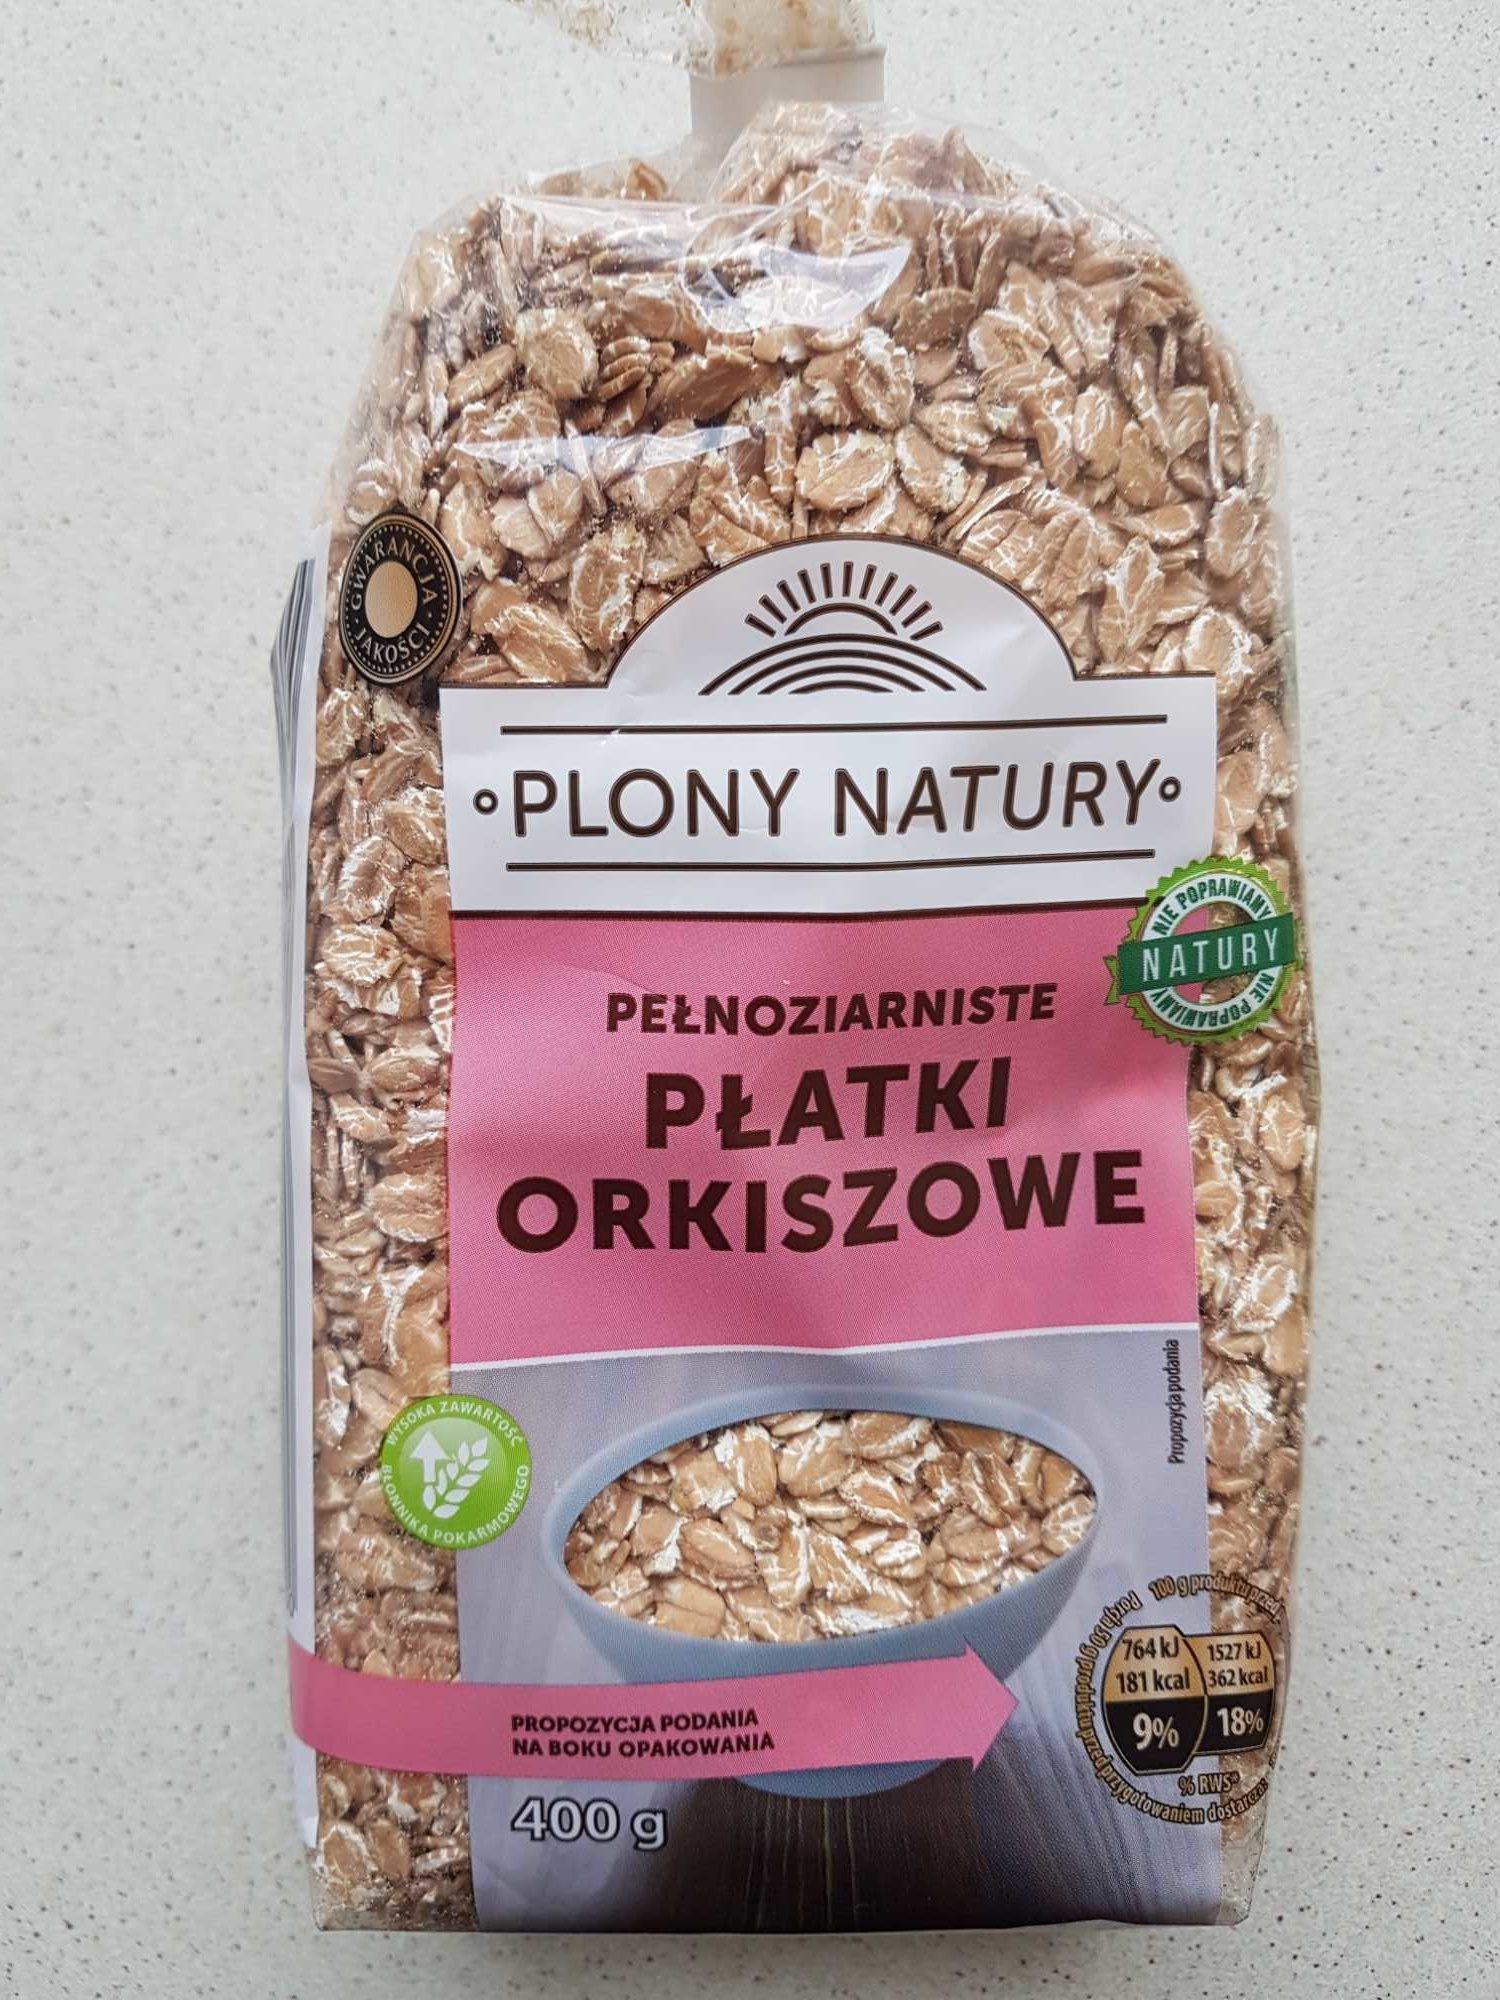 Pełnoziarniste płatki orkiszowe - Product - pl